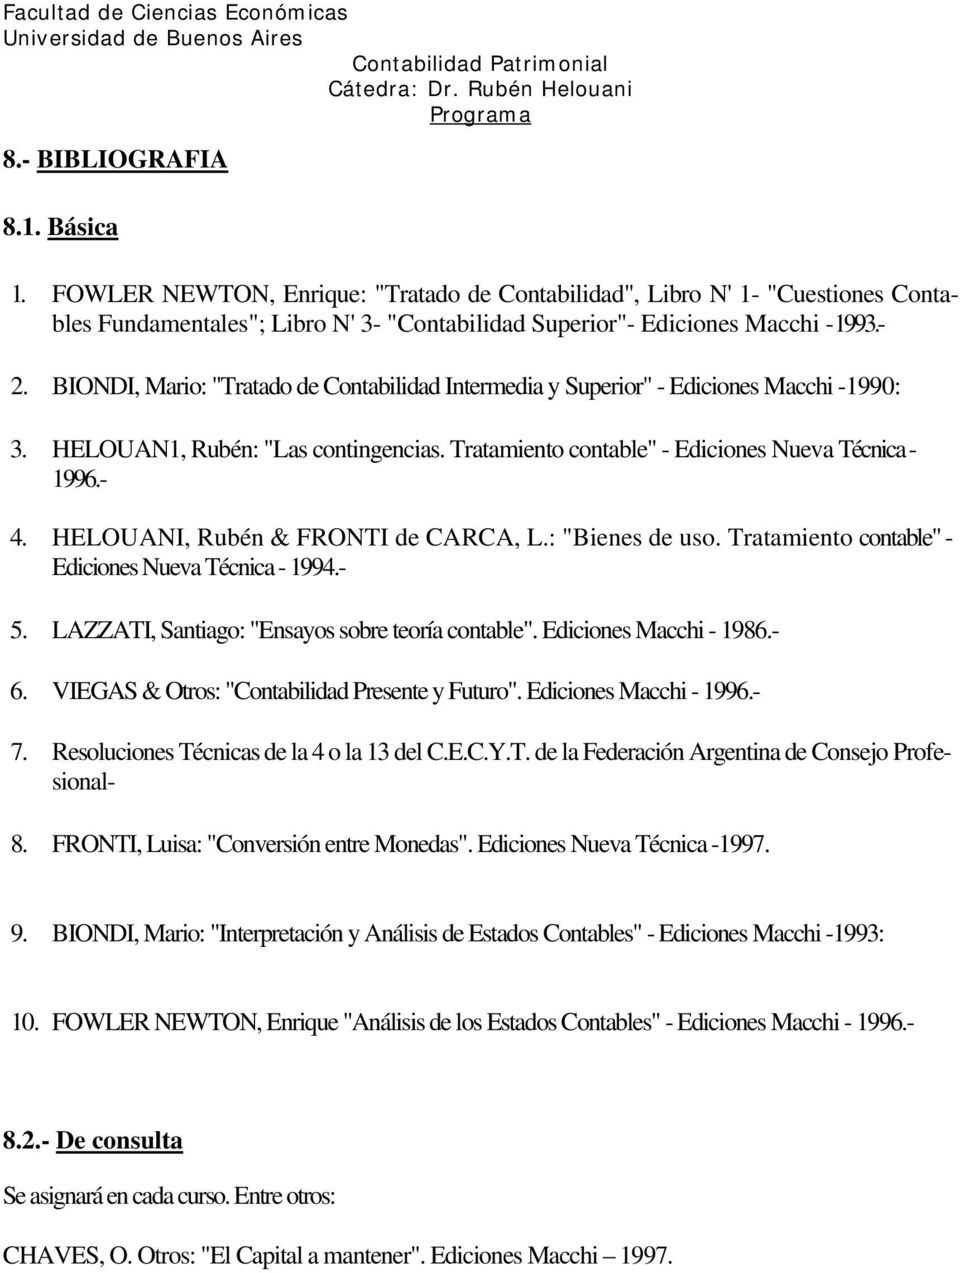 HELOUANI, Rubén & FRONTI de CARCA, L.: "Bienes de uso. Tratamiento contable" - Ediciones Nueva Técnica - 1994.- 5. LAZZATI, Santiago: "Ensayos sobre teoría contable". Ediciones Macchi - 1986.- 6.